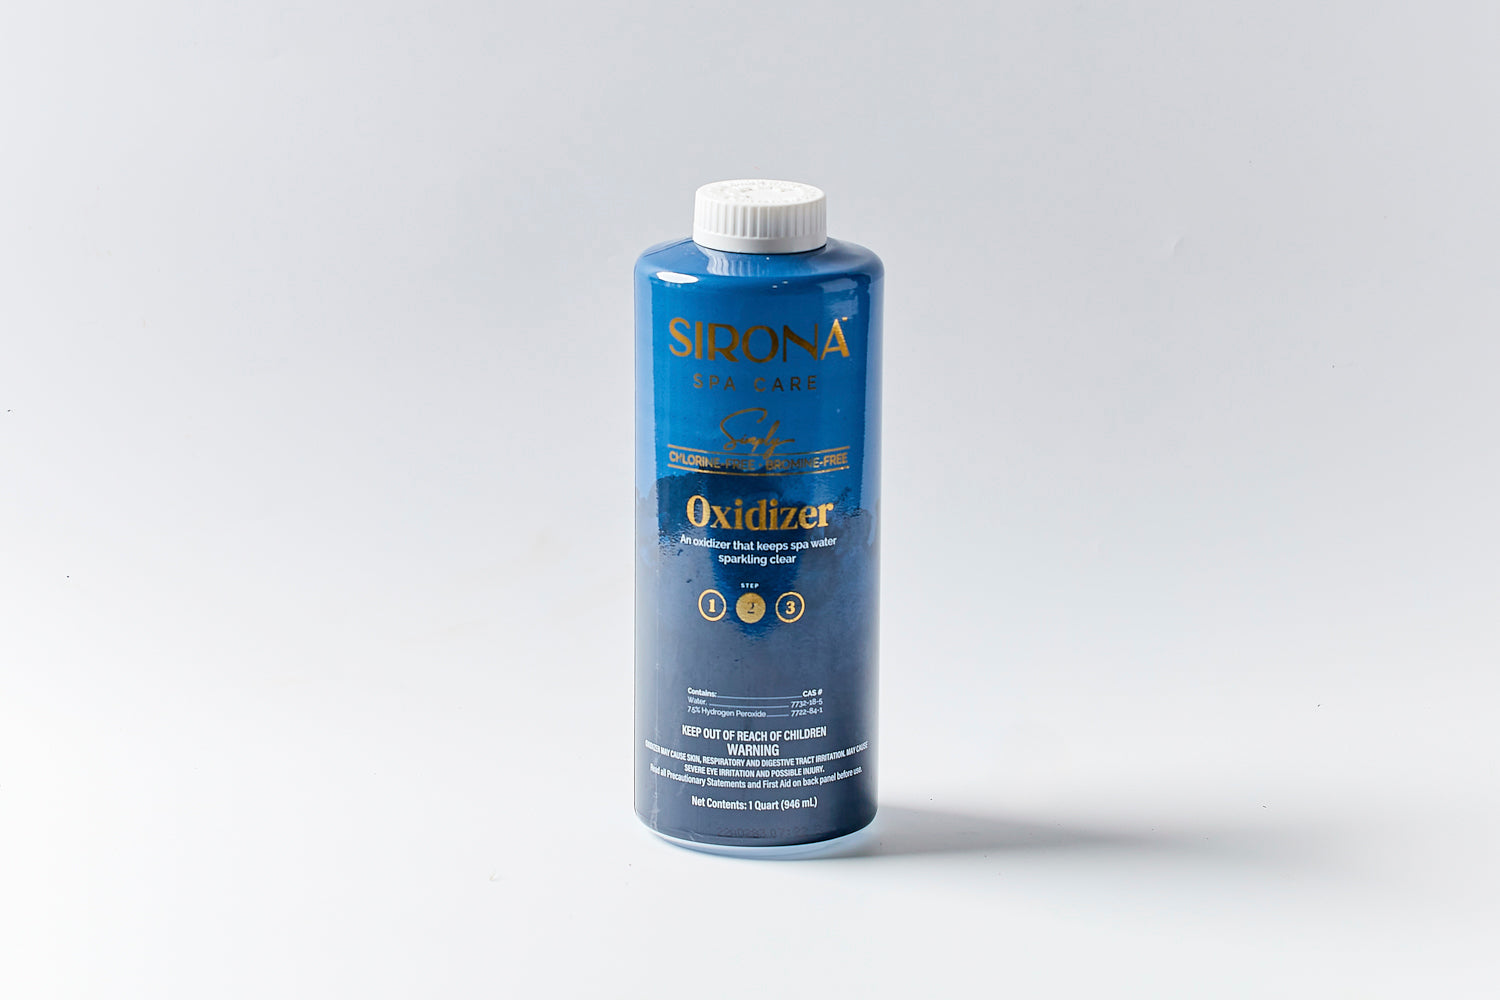 Sirona Oxidizer